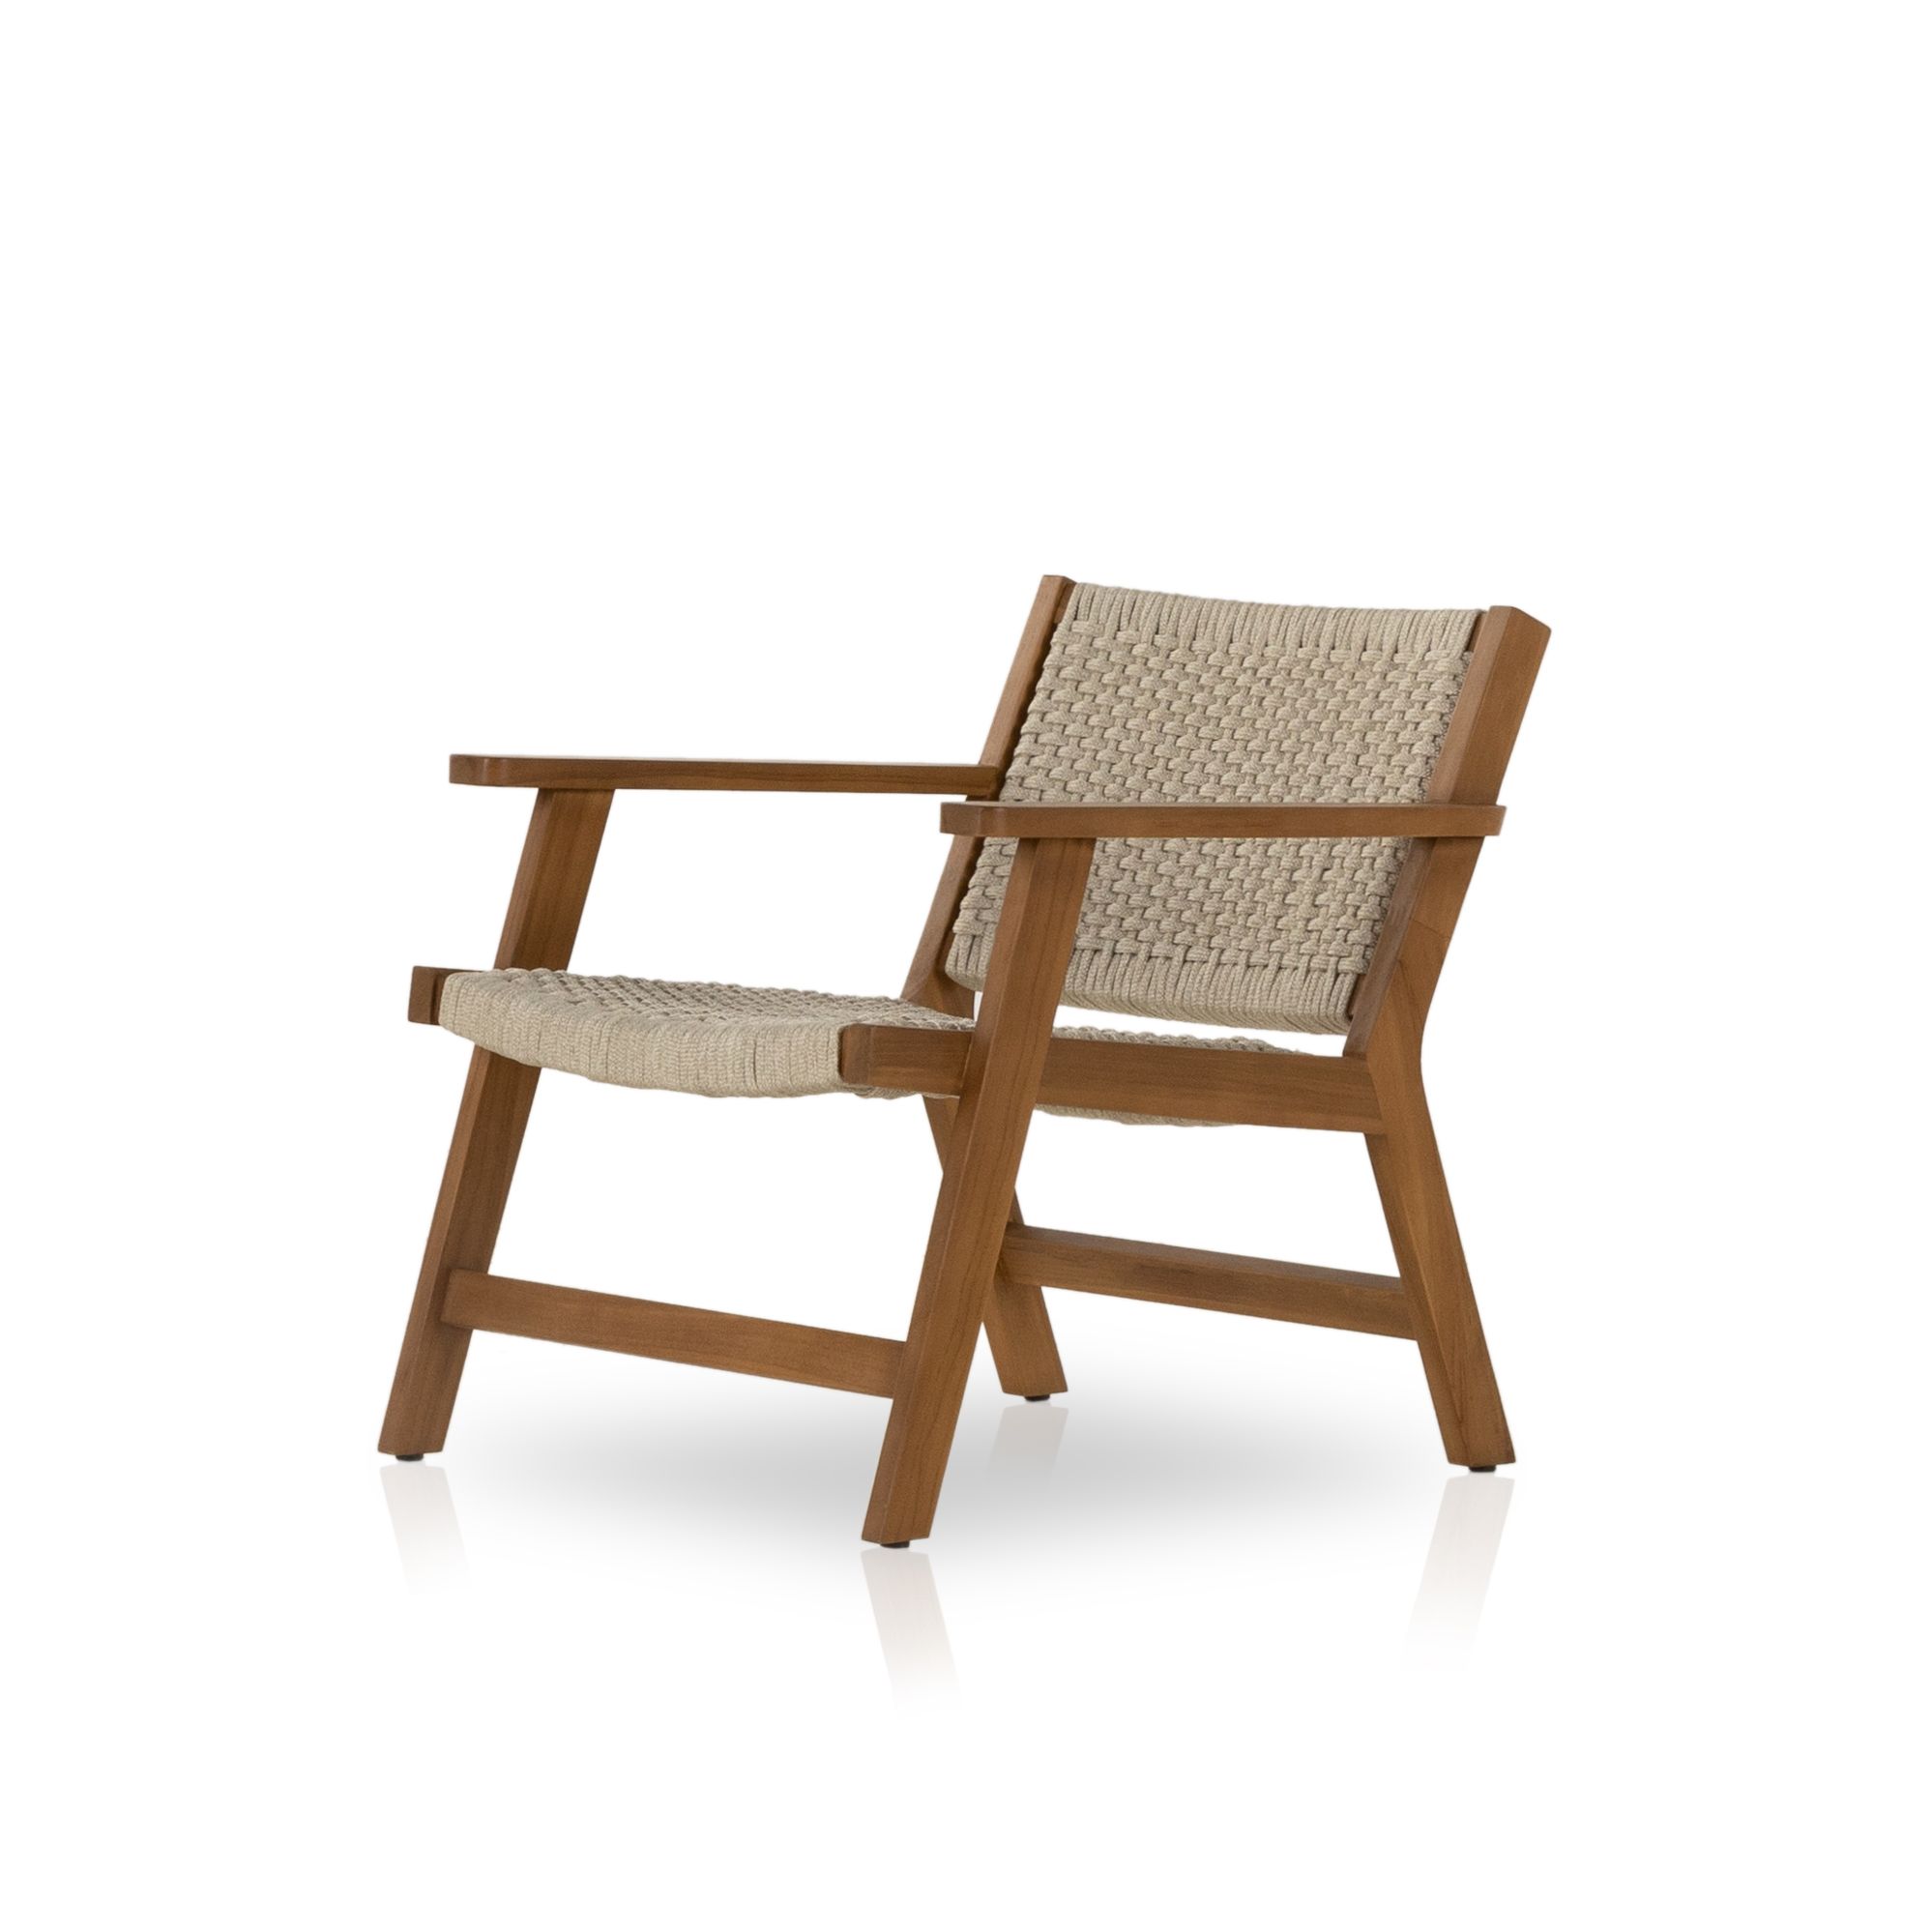 Delano Chair in Kilim Gypsy, Bright Kilim-Print Chair